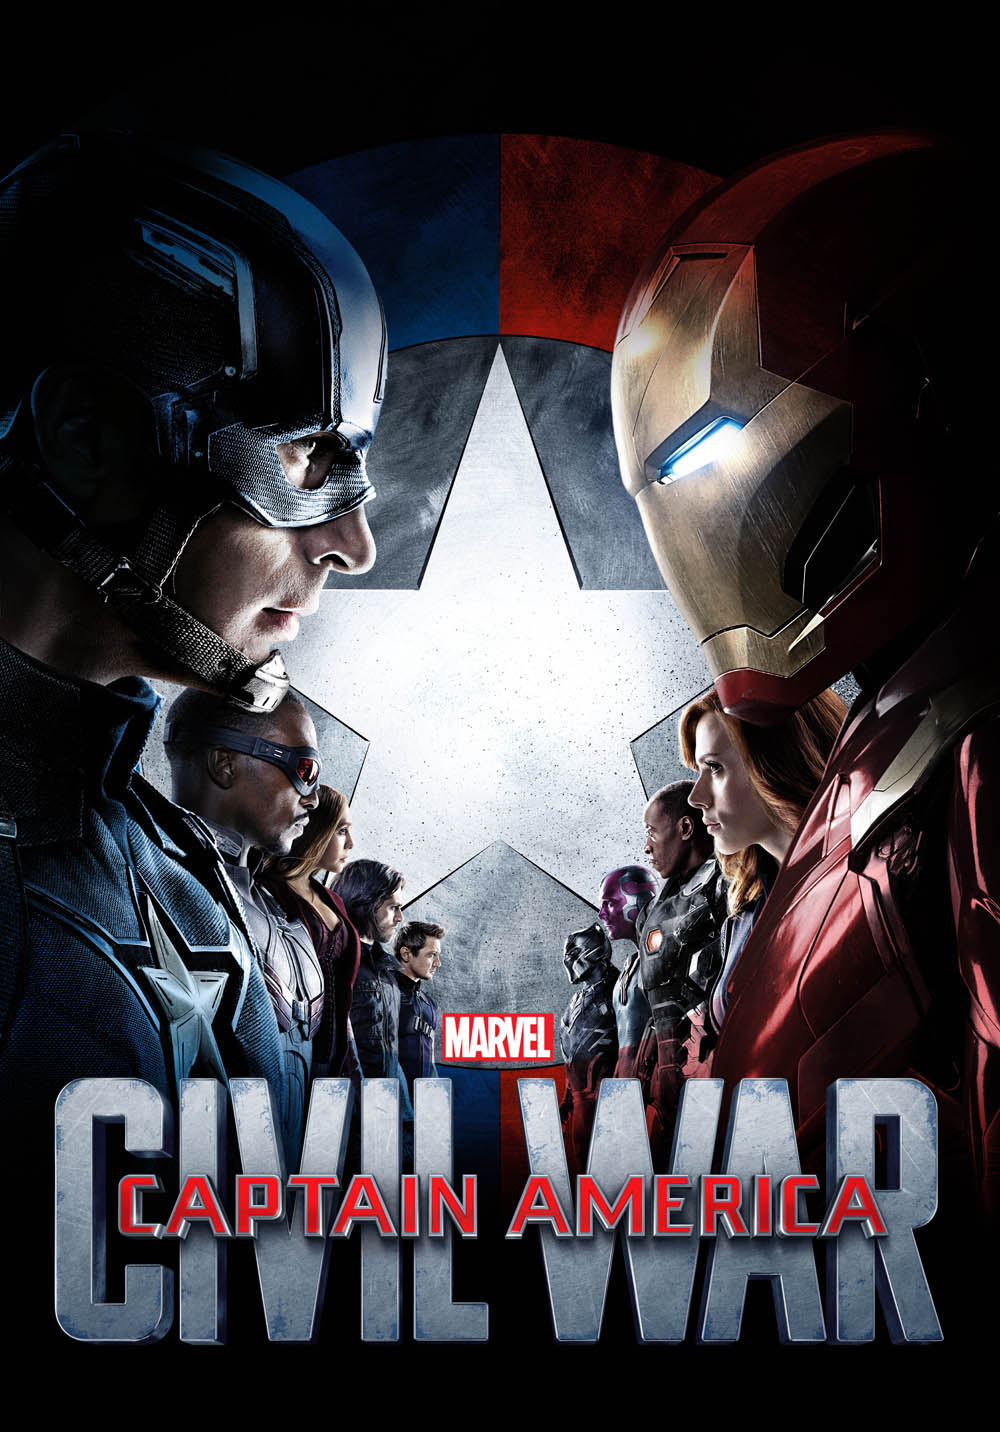 Captain America Civil War (2016) Hindi Dubbed Audio track